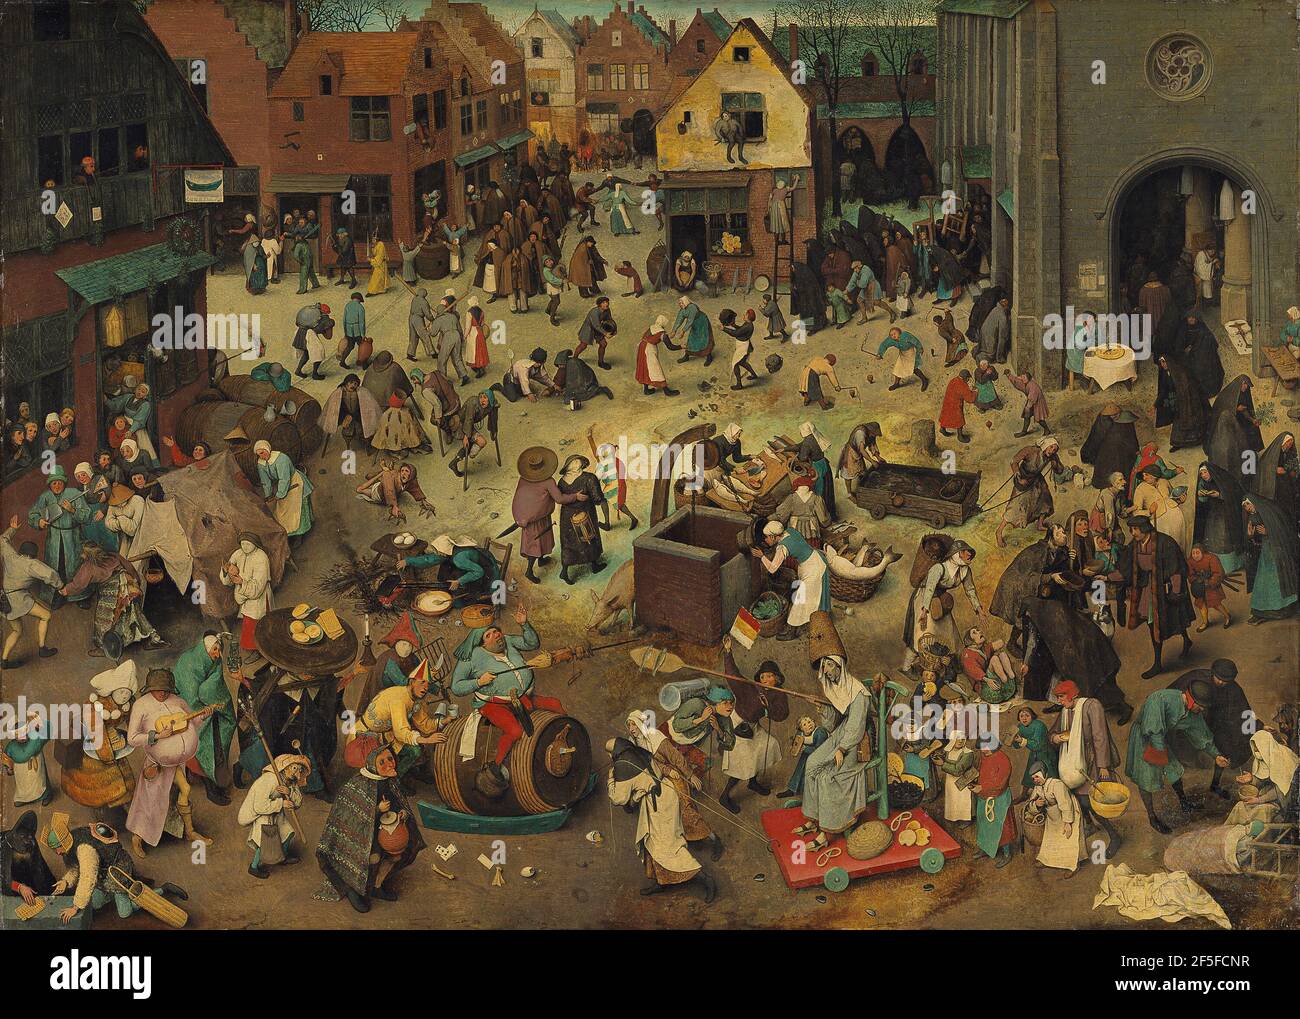 Titel: Kampf zwischen Fasching Ersteller: Pieter Bruegel der Ältere Datum: 1559 Medium: Öl auf Eichenplatte Maße: 26.5x39.4 cms Ort: Kunsthistorisches Museum, Wien, Österreich Stockfoto